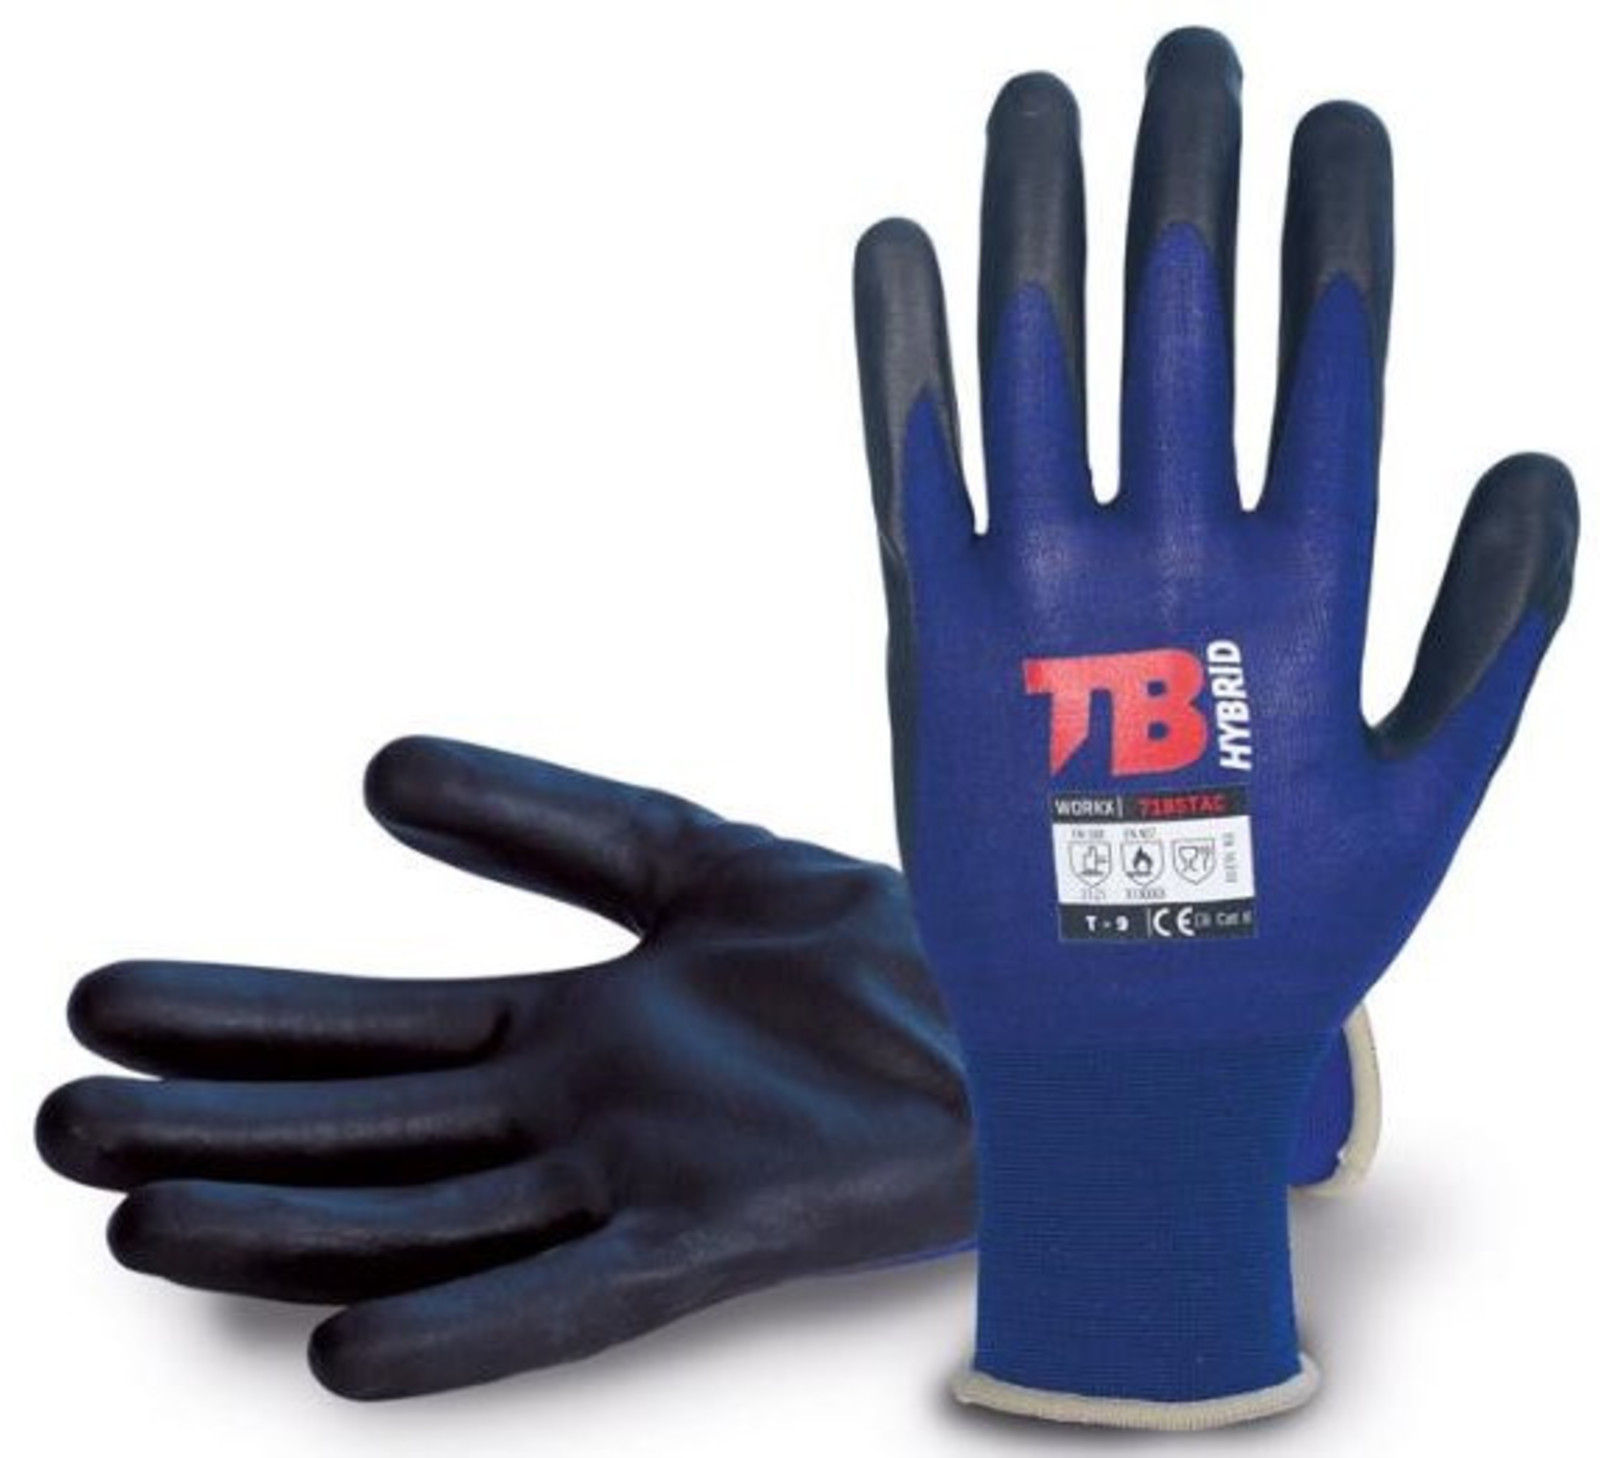 Nylonové rukavice TB 718 Stac - veľkosť: 7/S